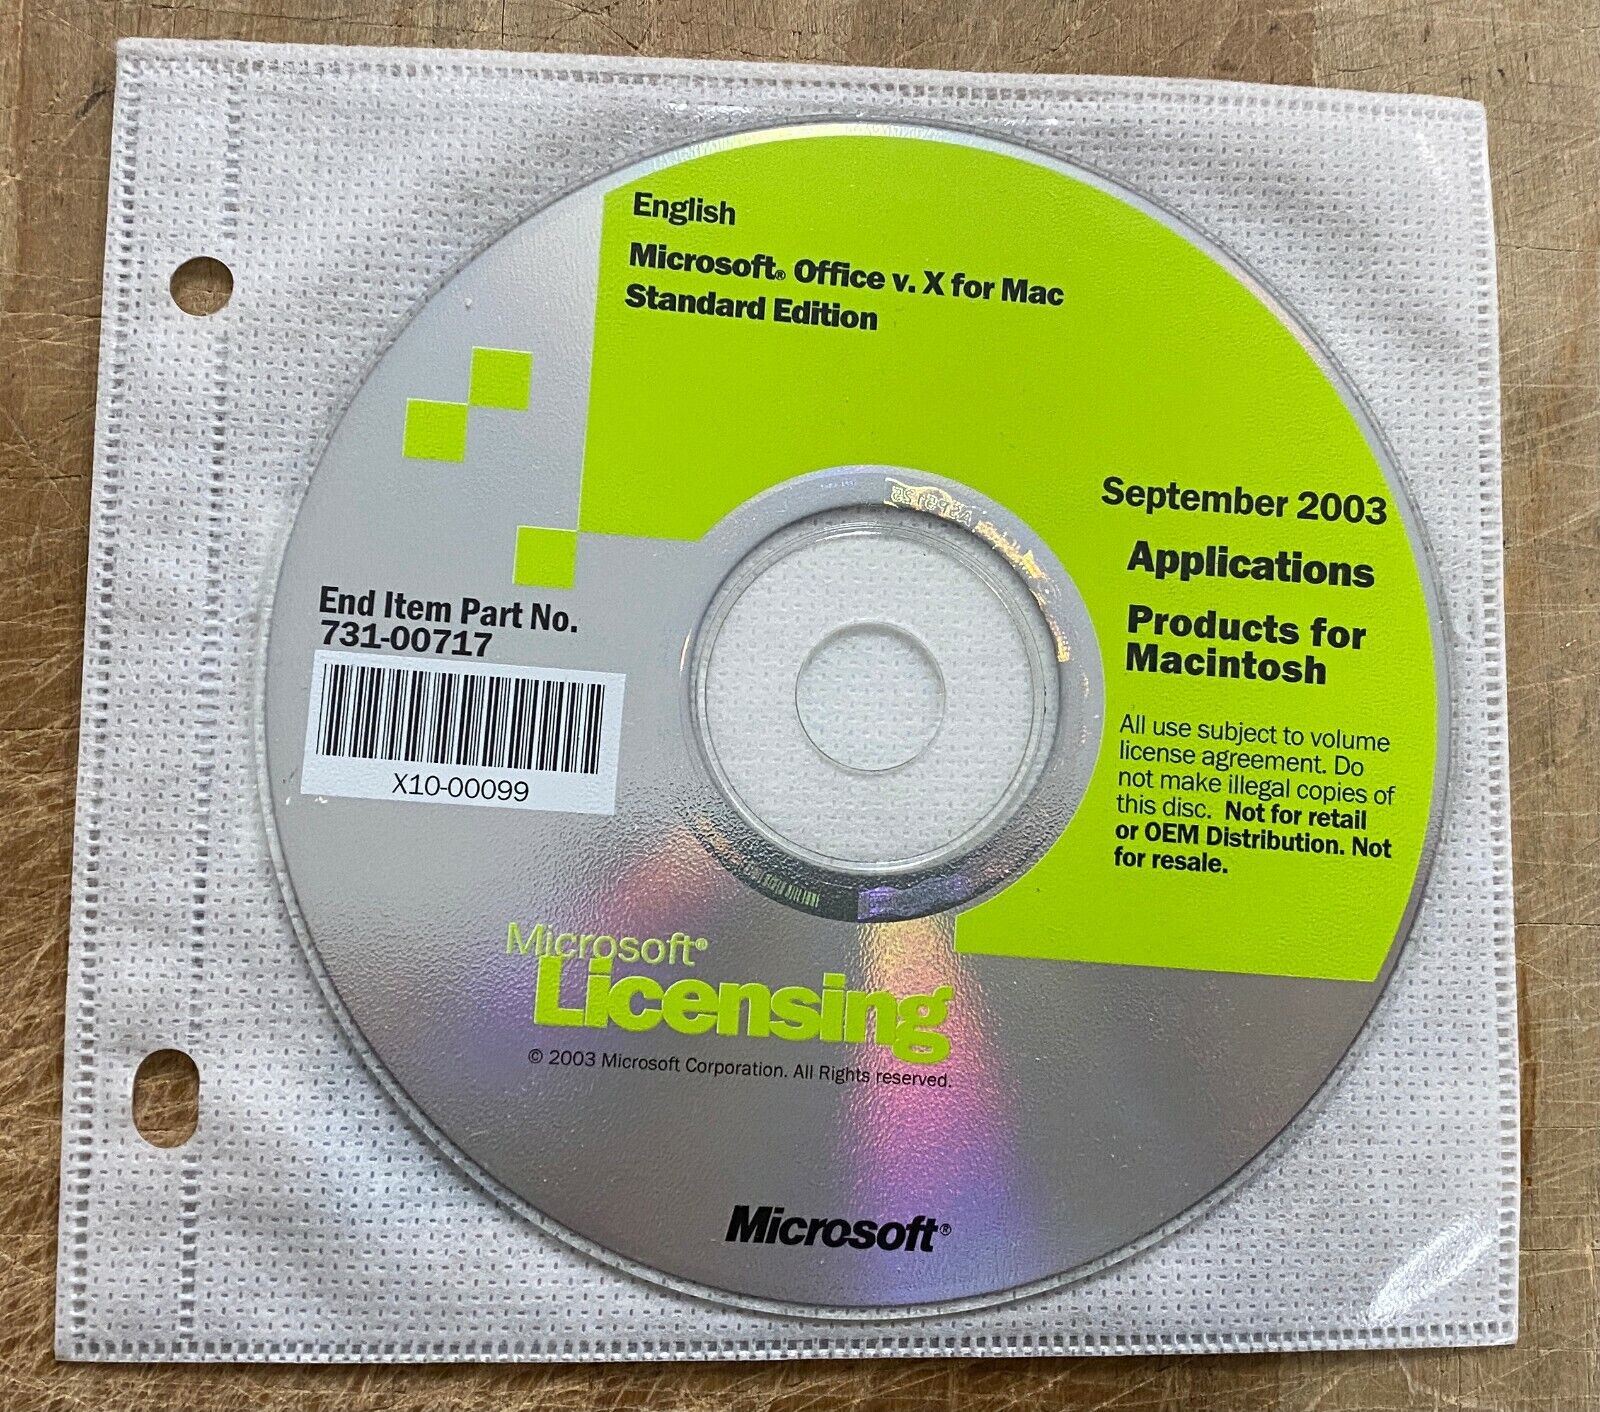 Microsoft Office v. X for Mac Volume License